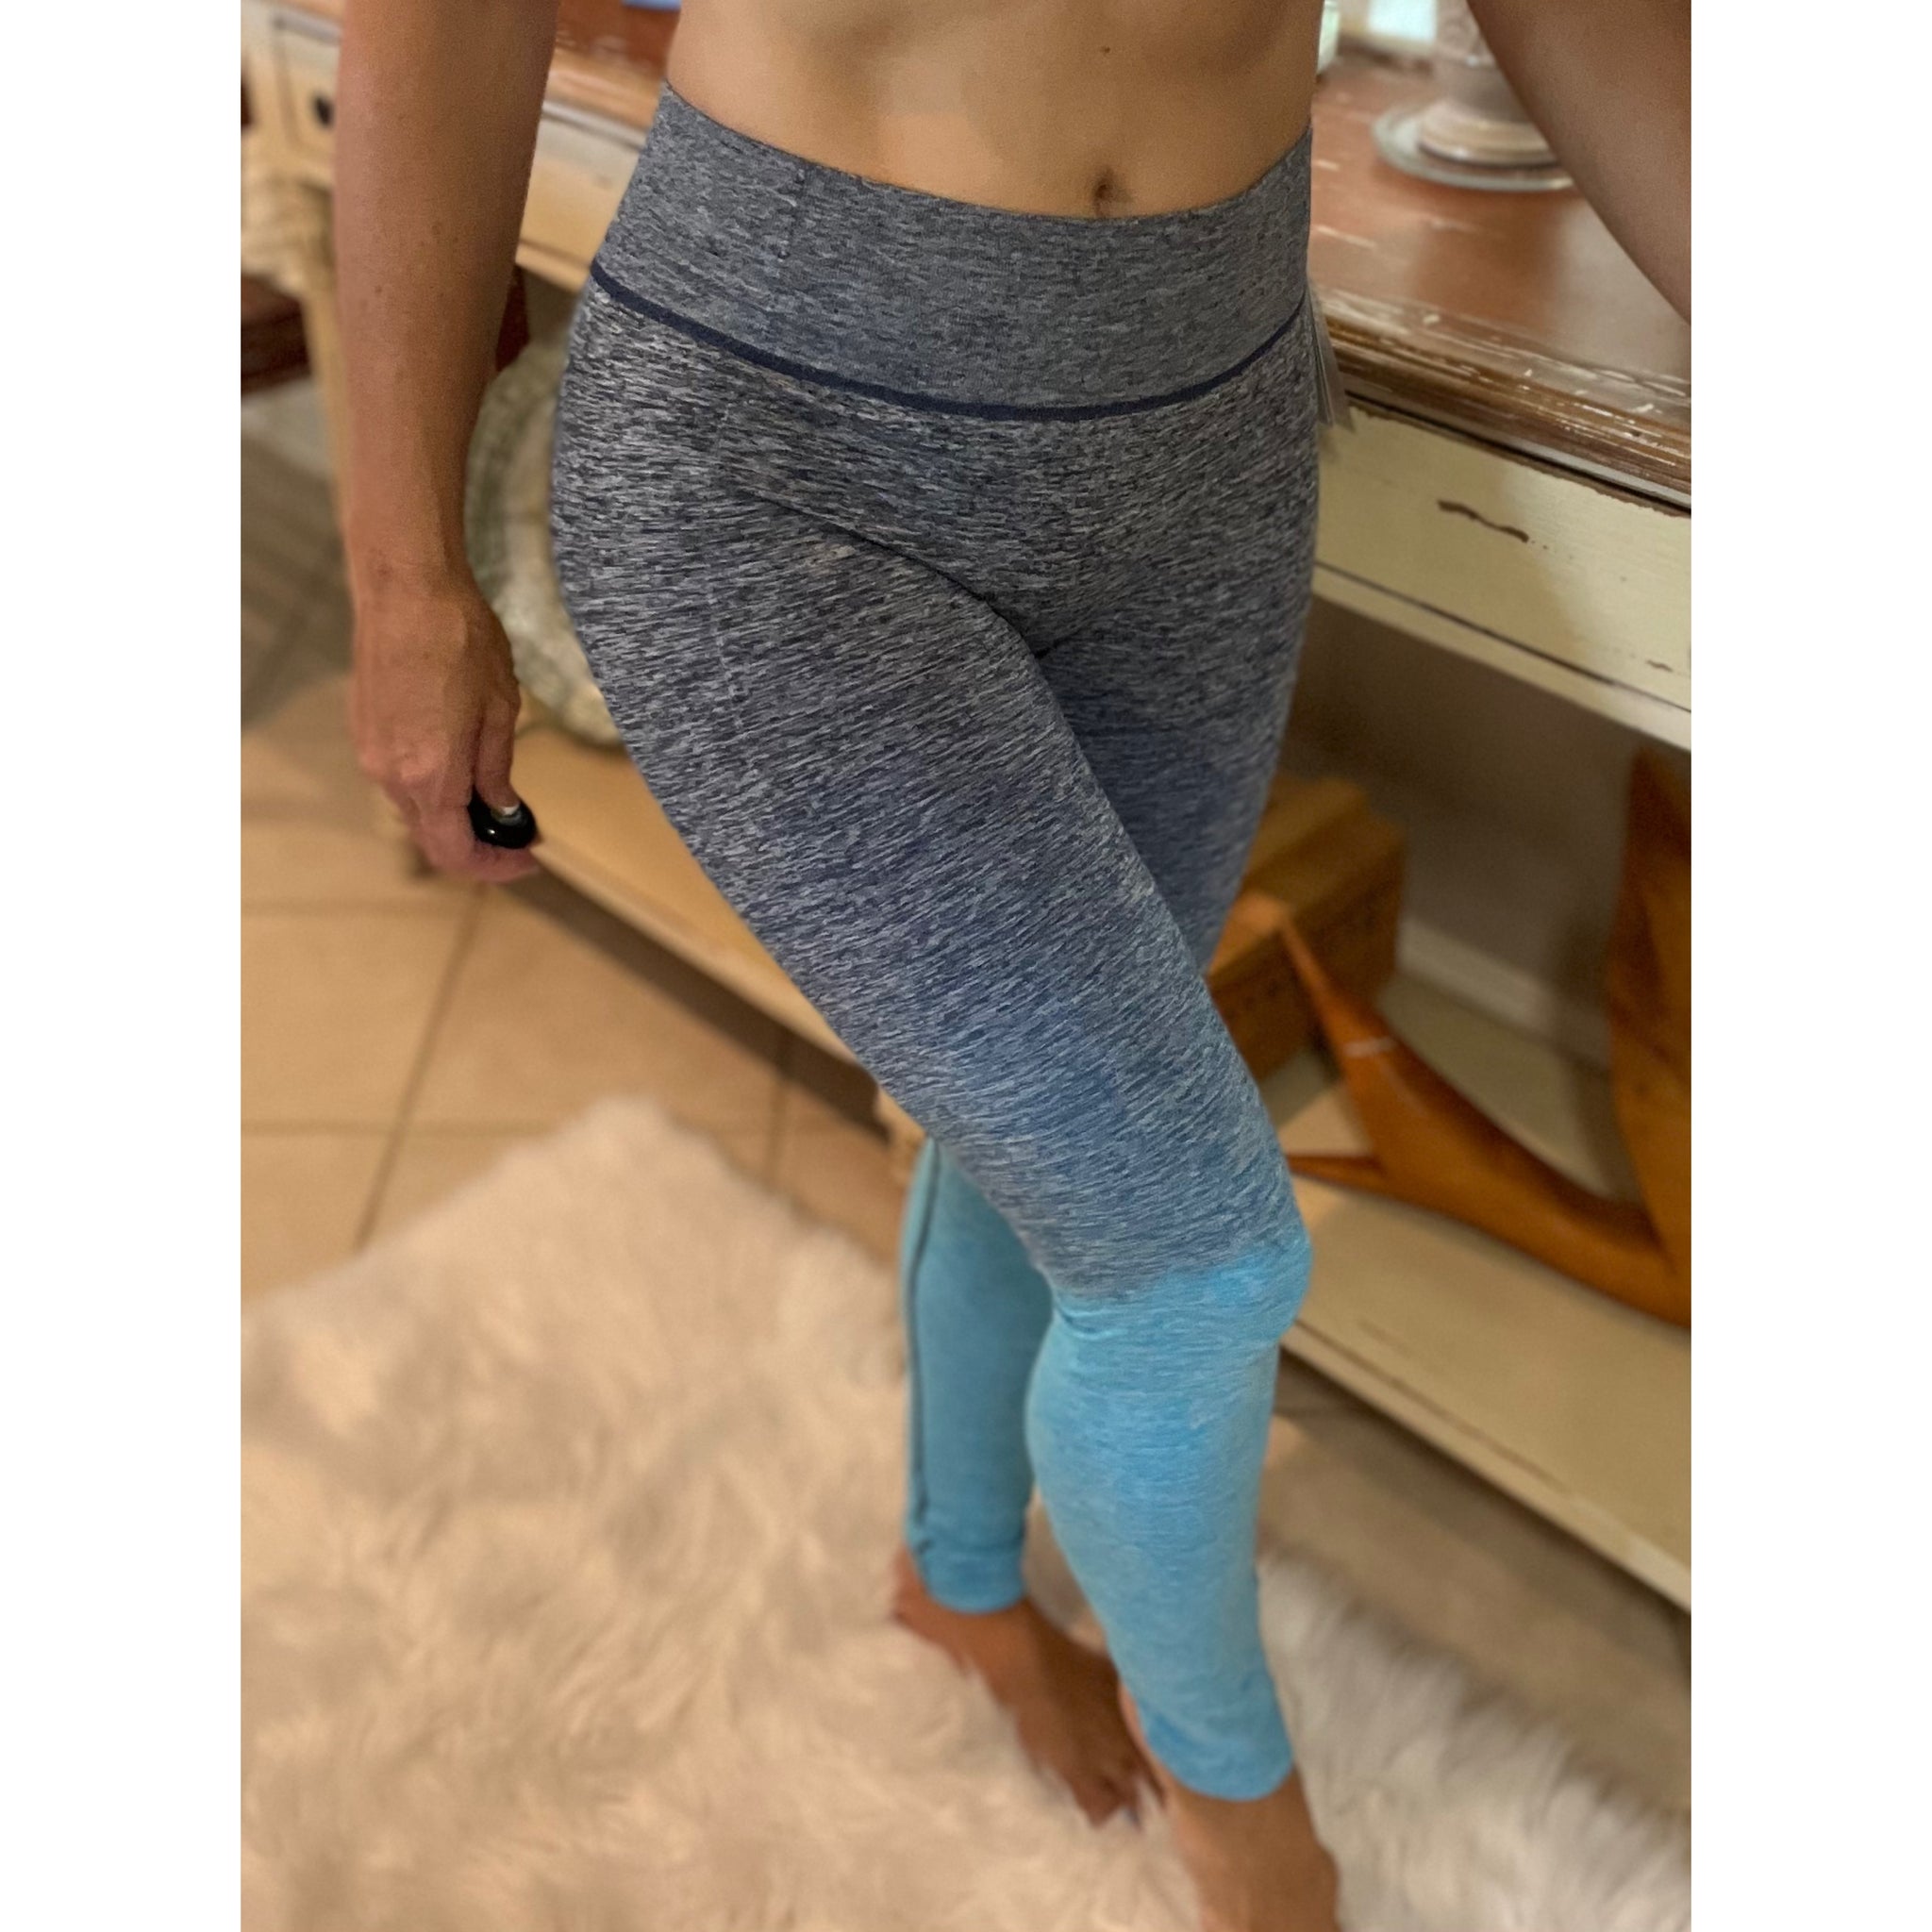 Leggings Stretch Yoga Lounge Ankle Ombré Pants Gym Workout Teal Blue S/M L/XL